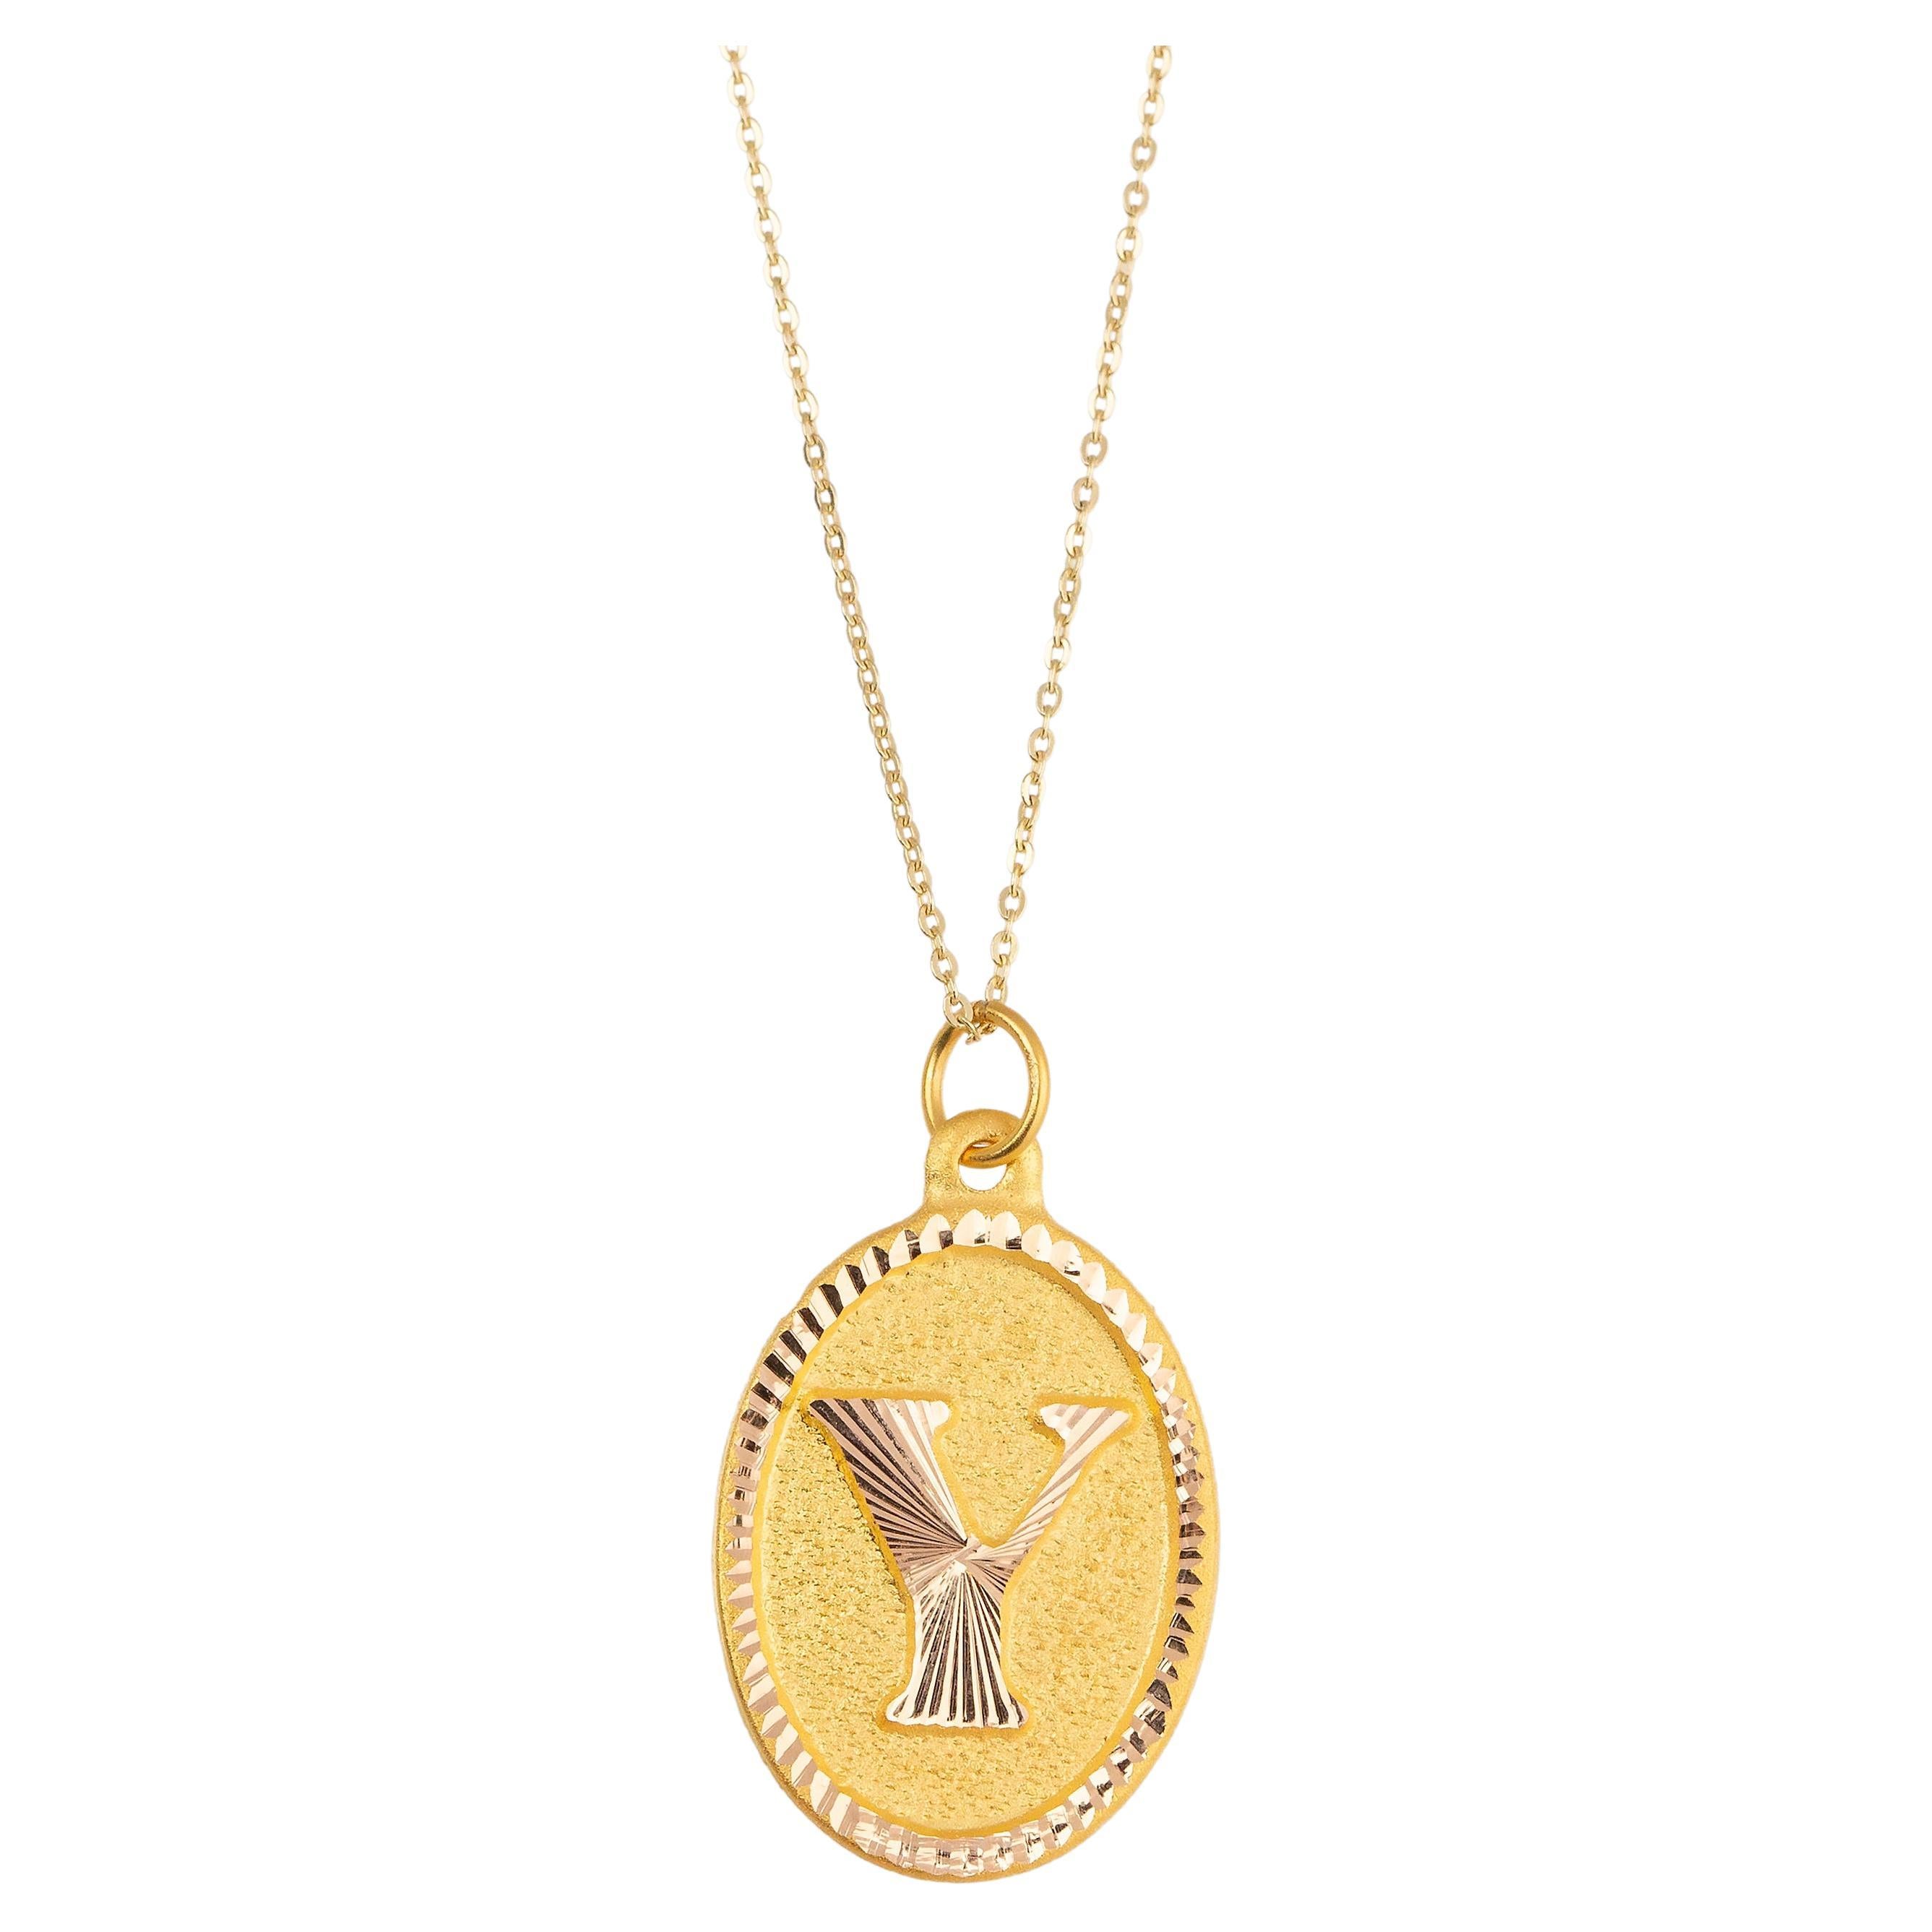 14k Gold Necklaces, Letter Necklace Models, Letter Y Gold Necklace-Gift Necklace